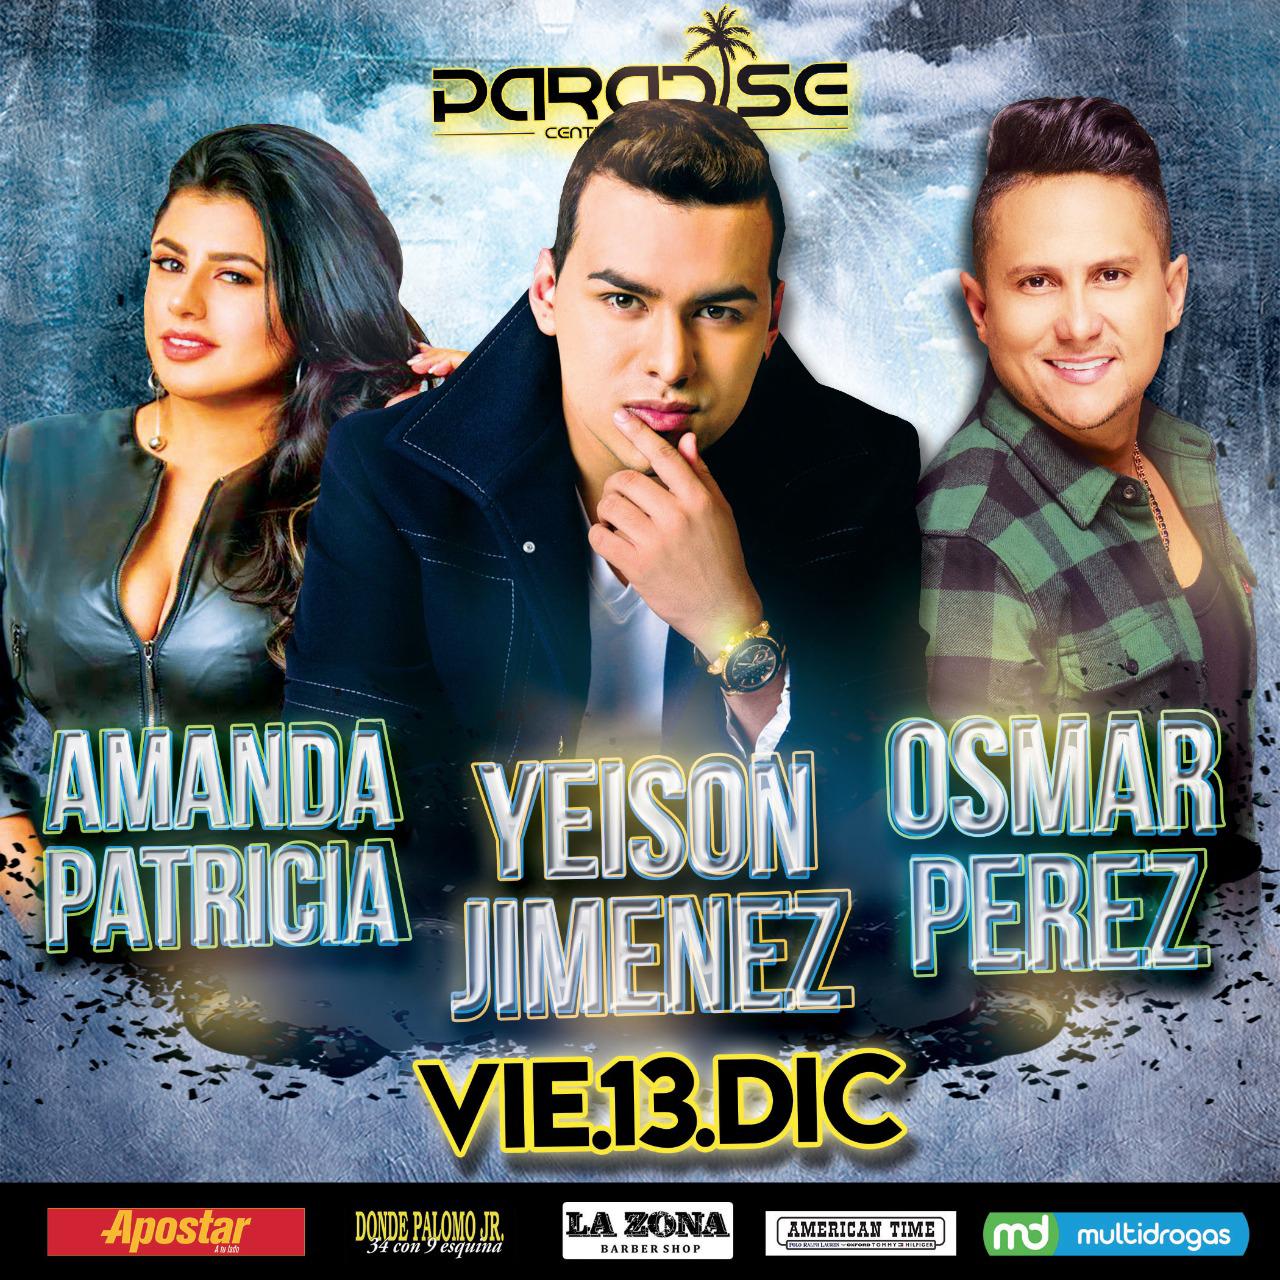 Yeison Jiménez en Paradise junto a Osmar Pérez y Amanda Patricia